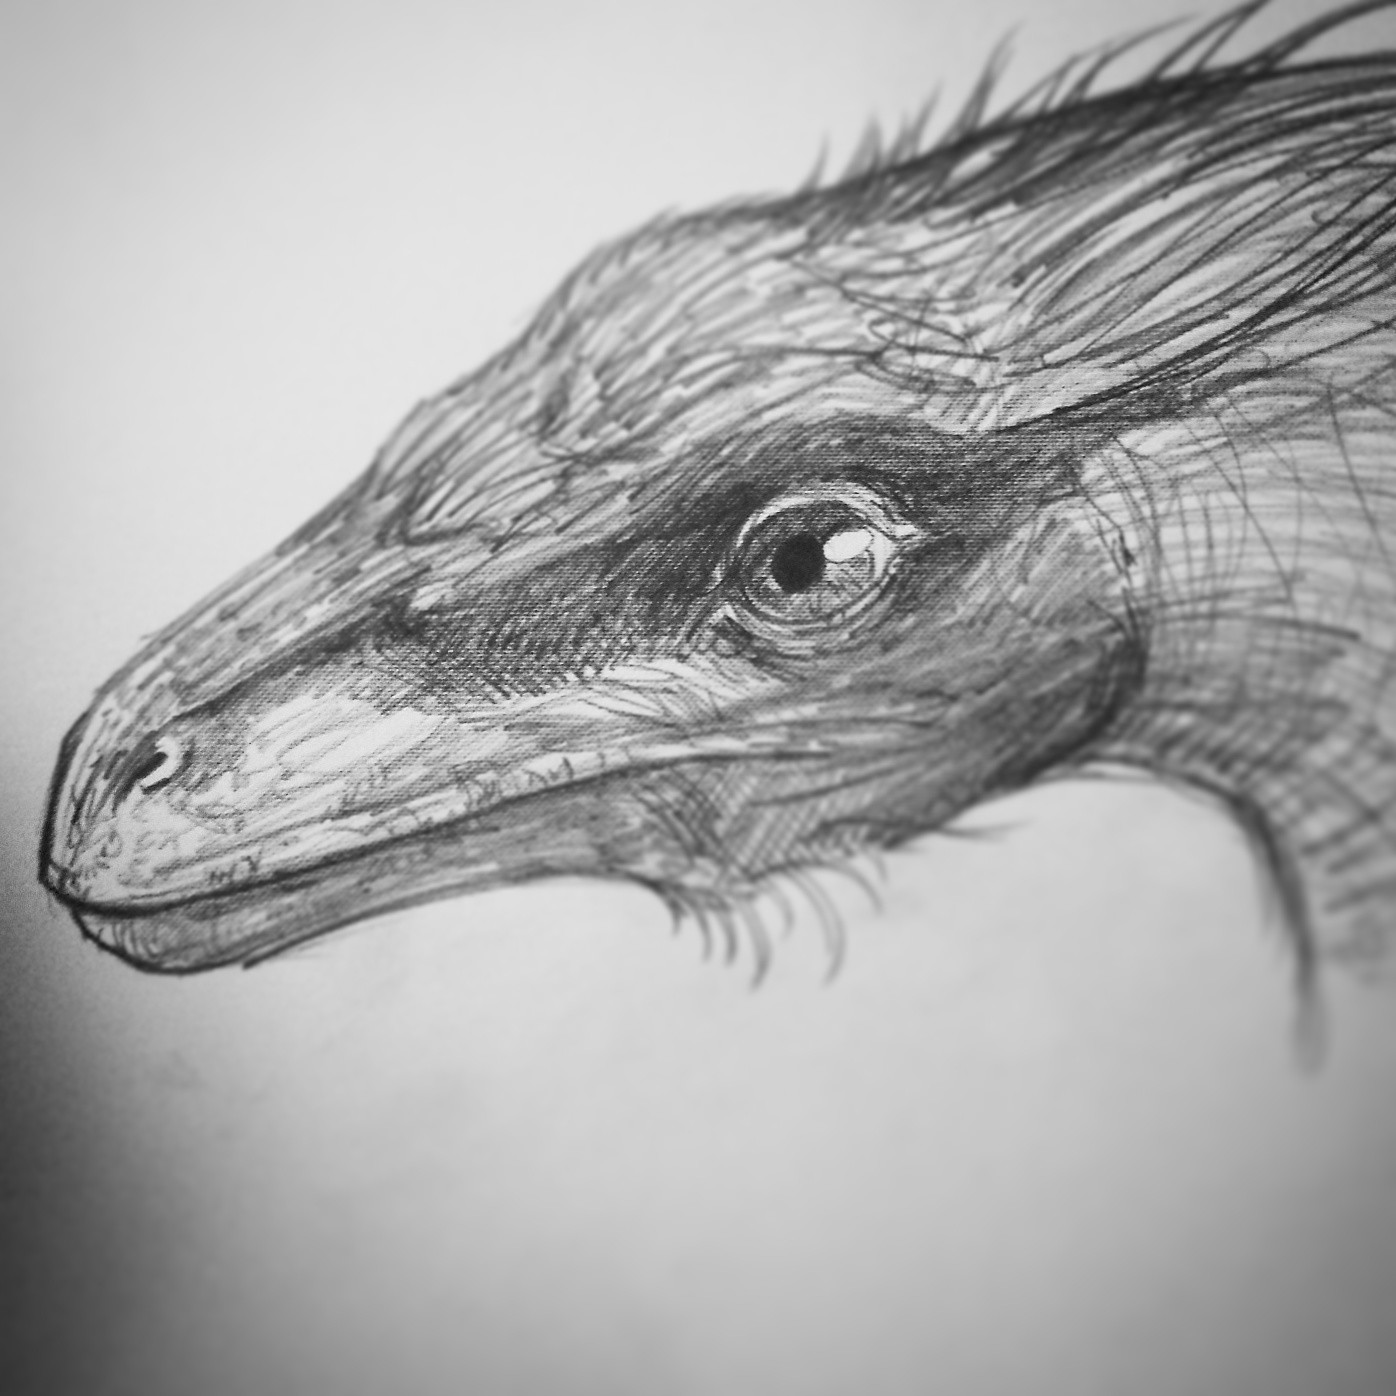 Troodon

https://www.kickstarter.com/projects/868769538/primeval-kings-the-art-of-ken-kokoszka